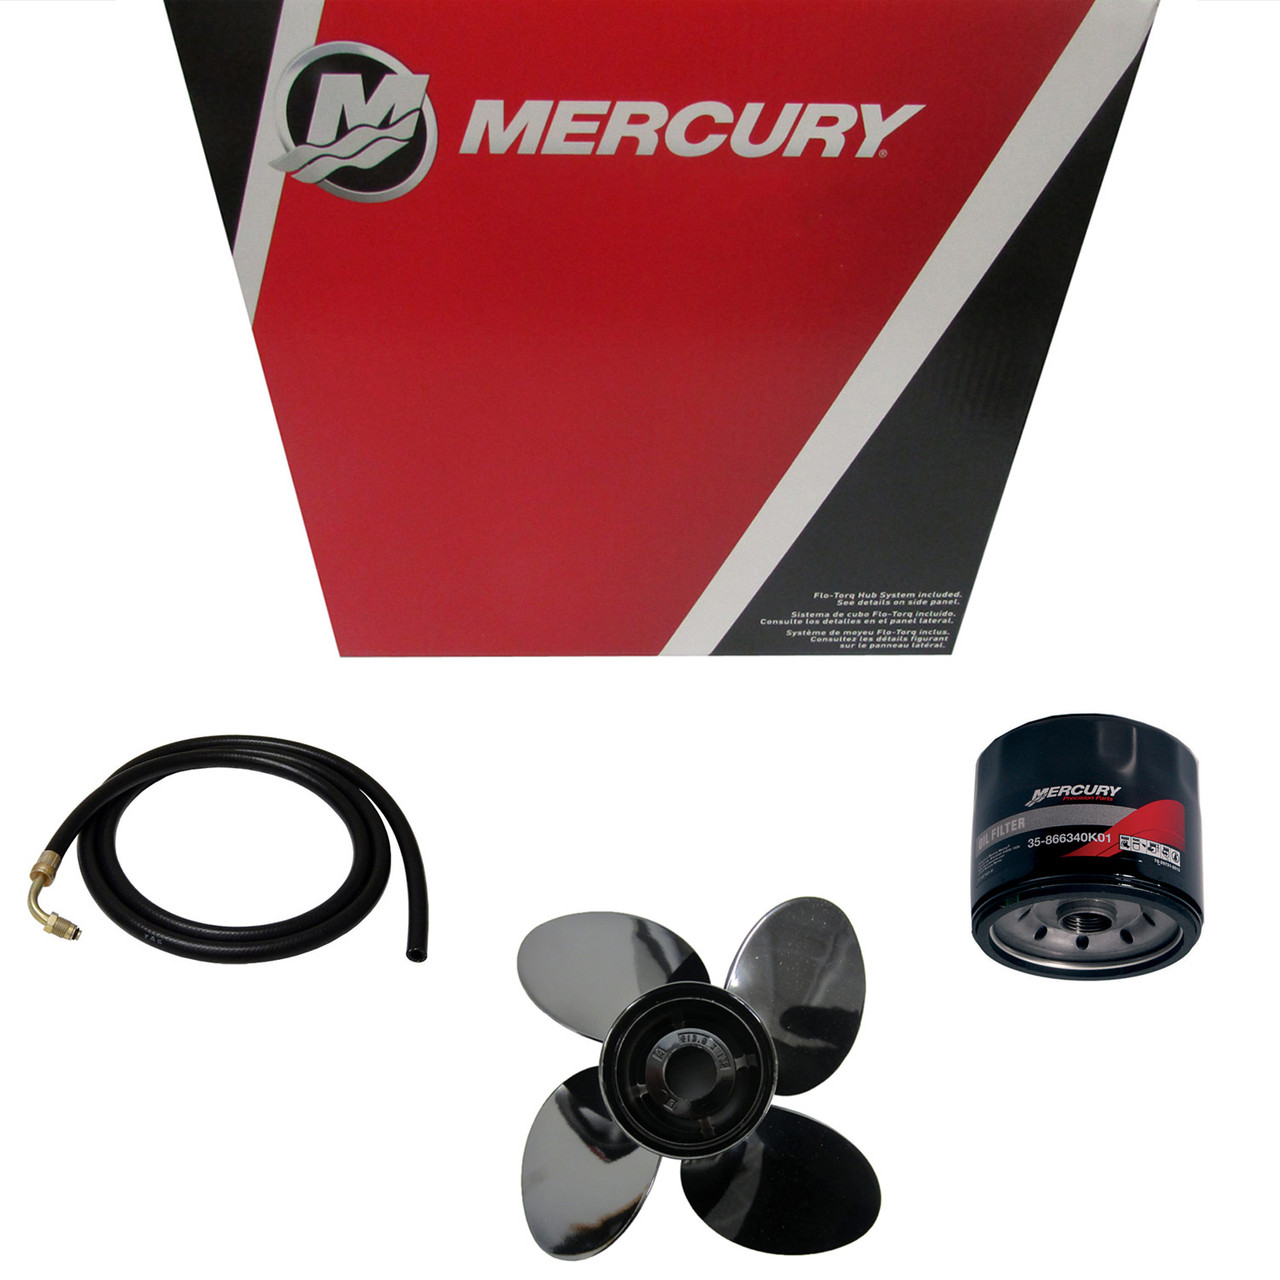 Mercury Marine / Mercruiser New OEM Bravo Iii X 1.81:1 Drive, 5-5447400TZ